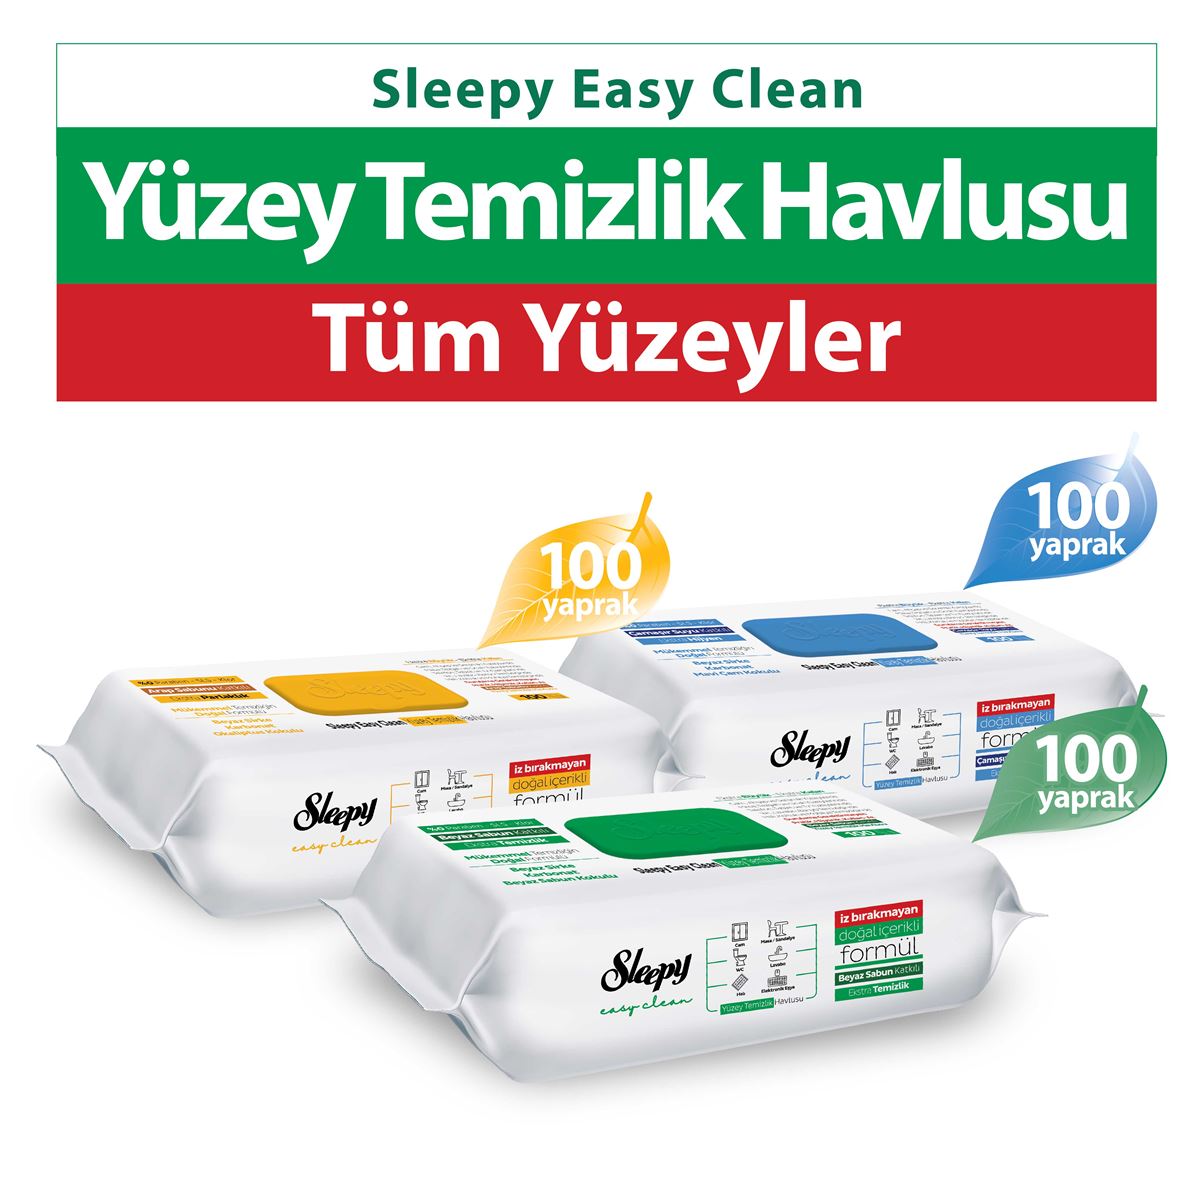 Sleepy Easy Clean Beyaz Sabun Katkılı+Çamaşır Suyu Katkılı+Arap Sabunu Katkılı Temizlik Havlusu 3x100 (300 Yaprak)